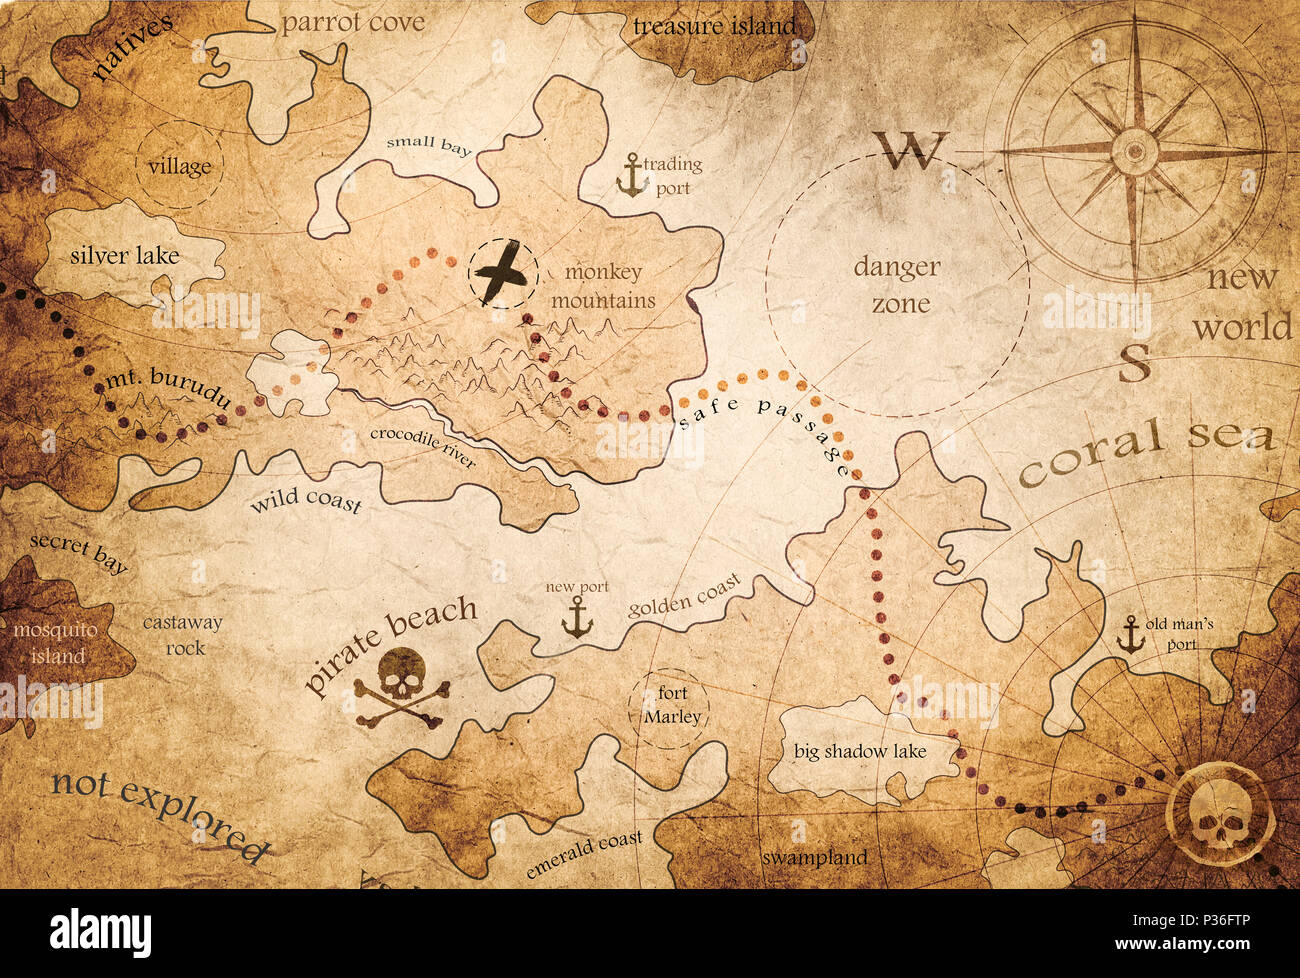 Fantasy Land mapa Foto de stock